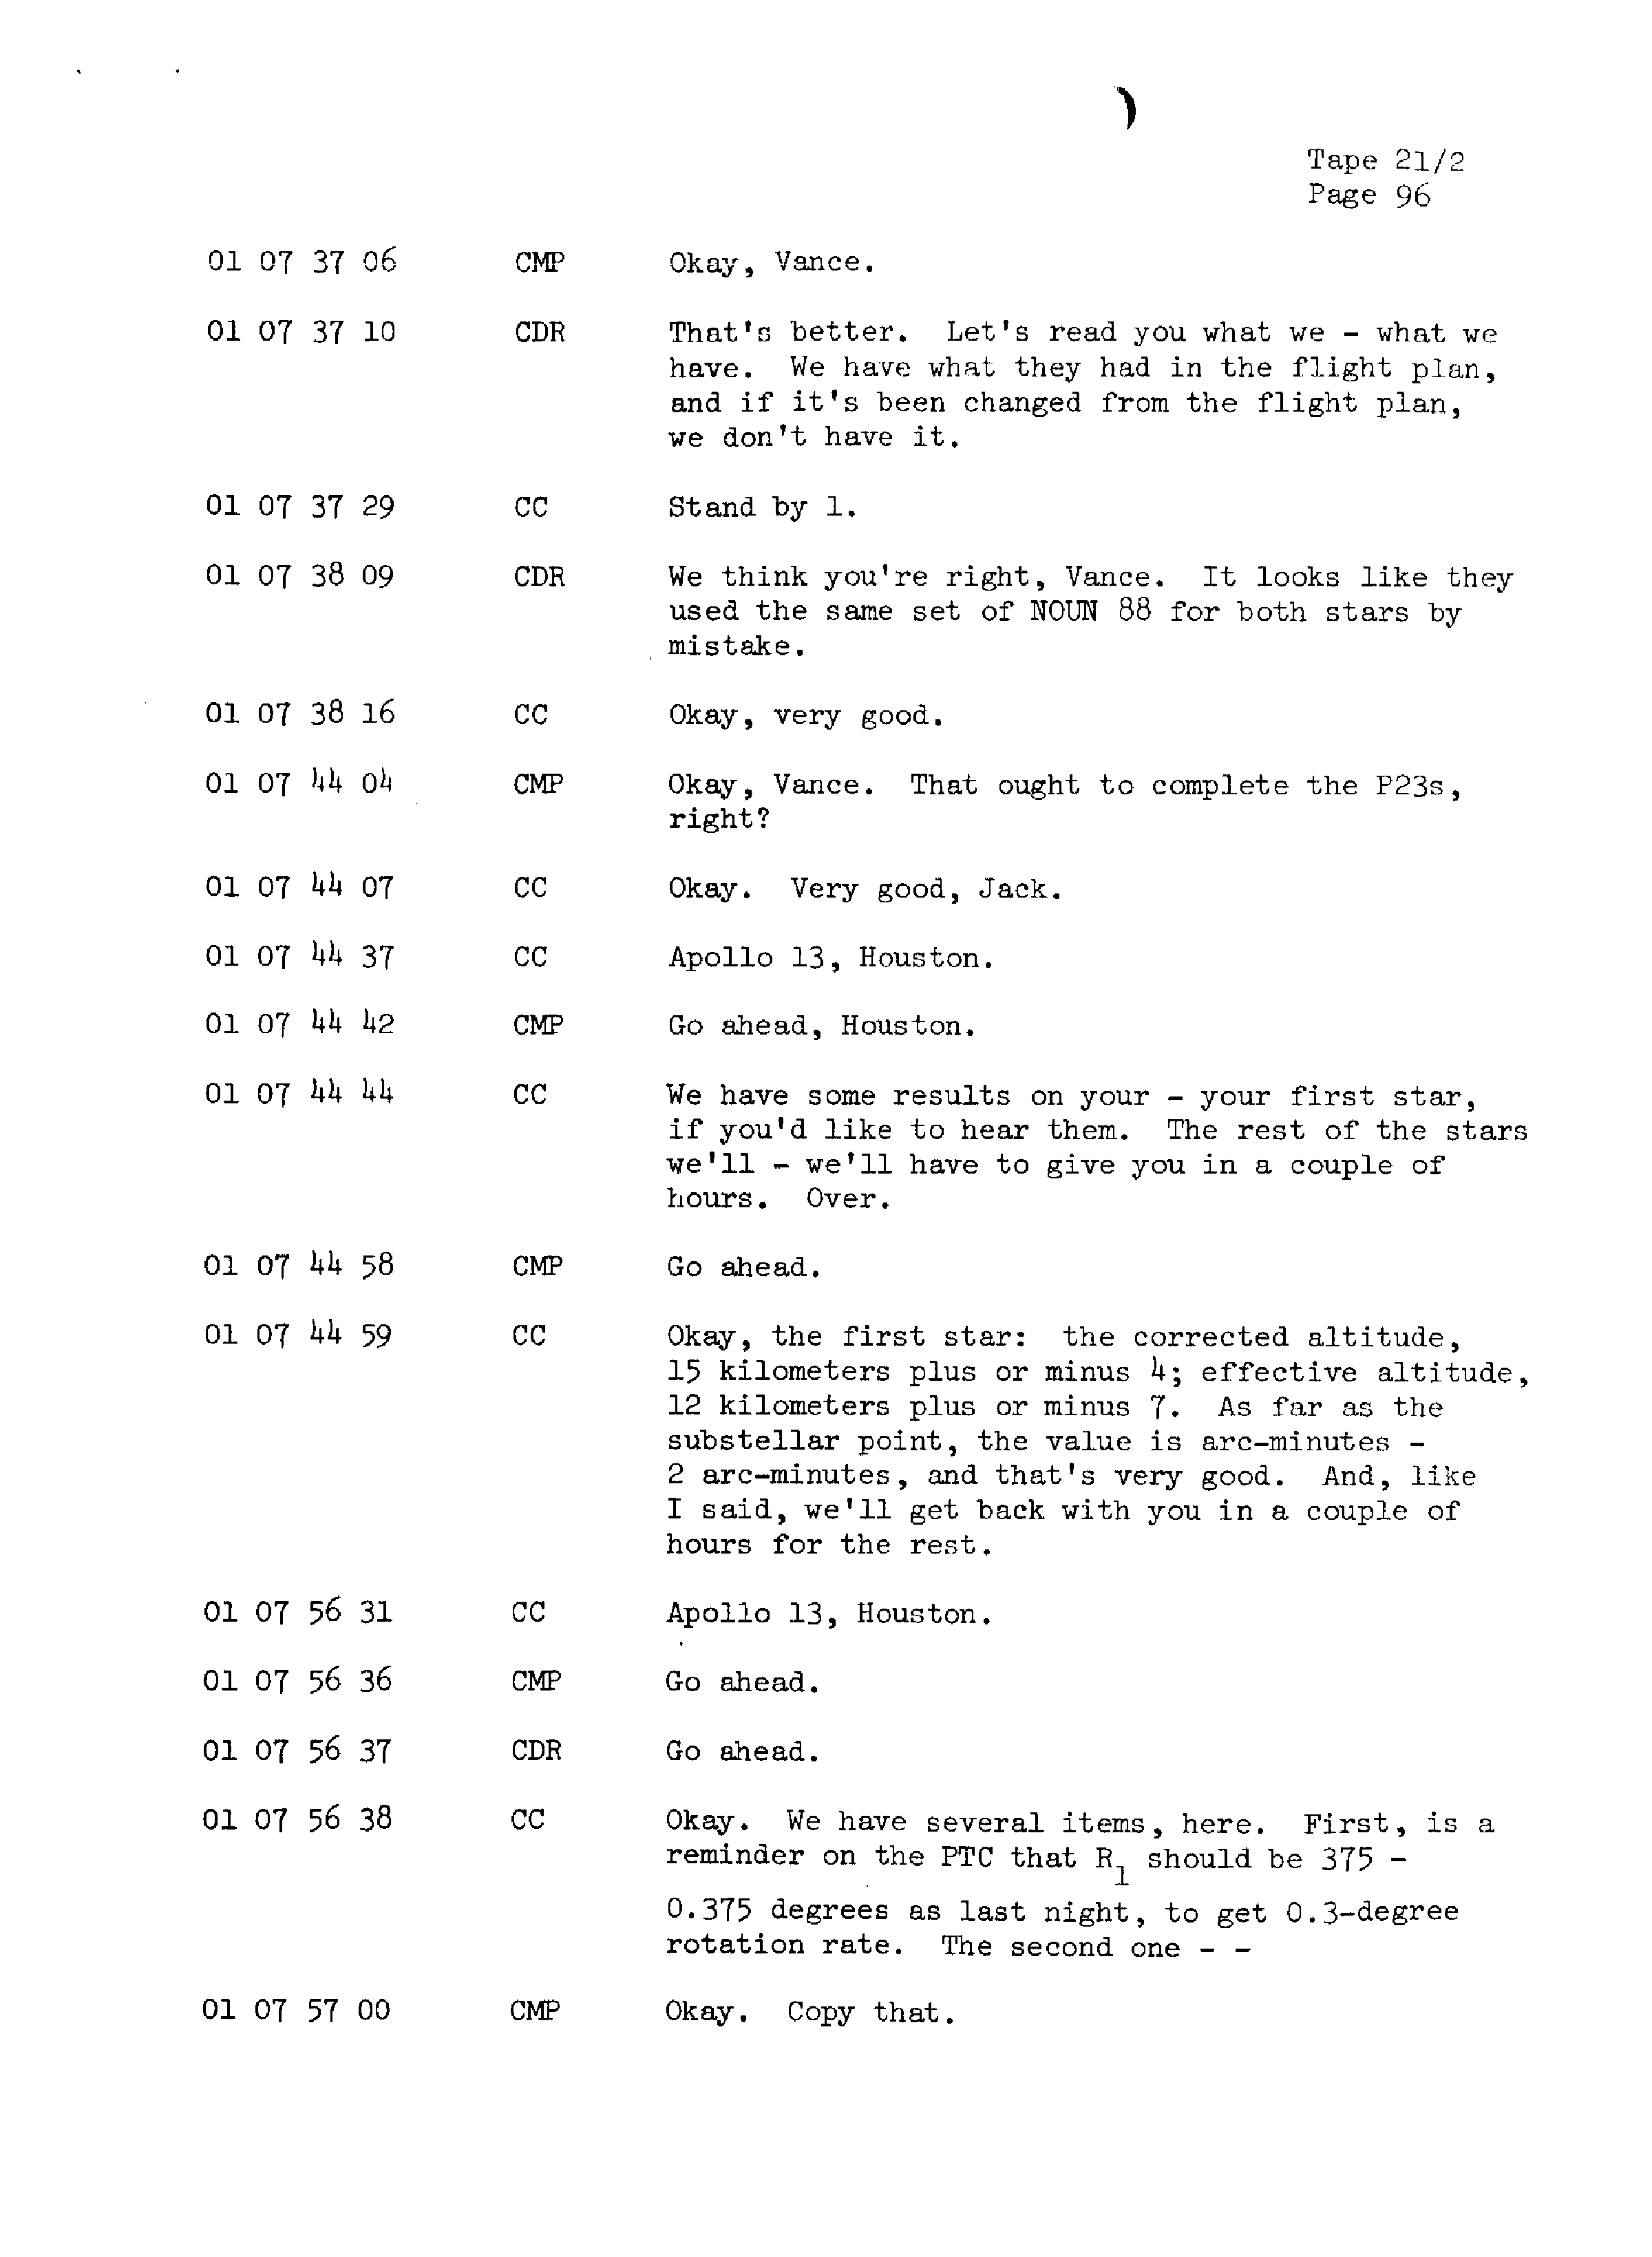 Page 103 of Apollo 13’s original transcript